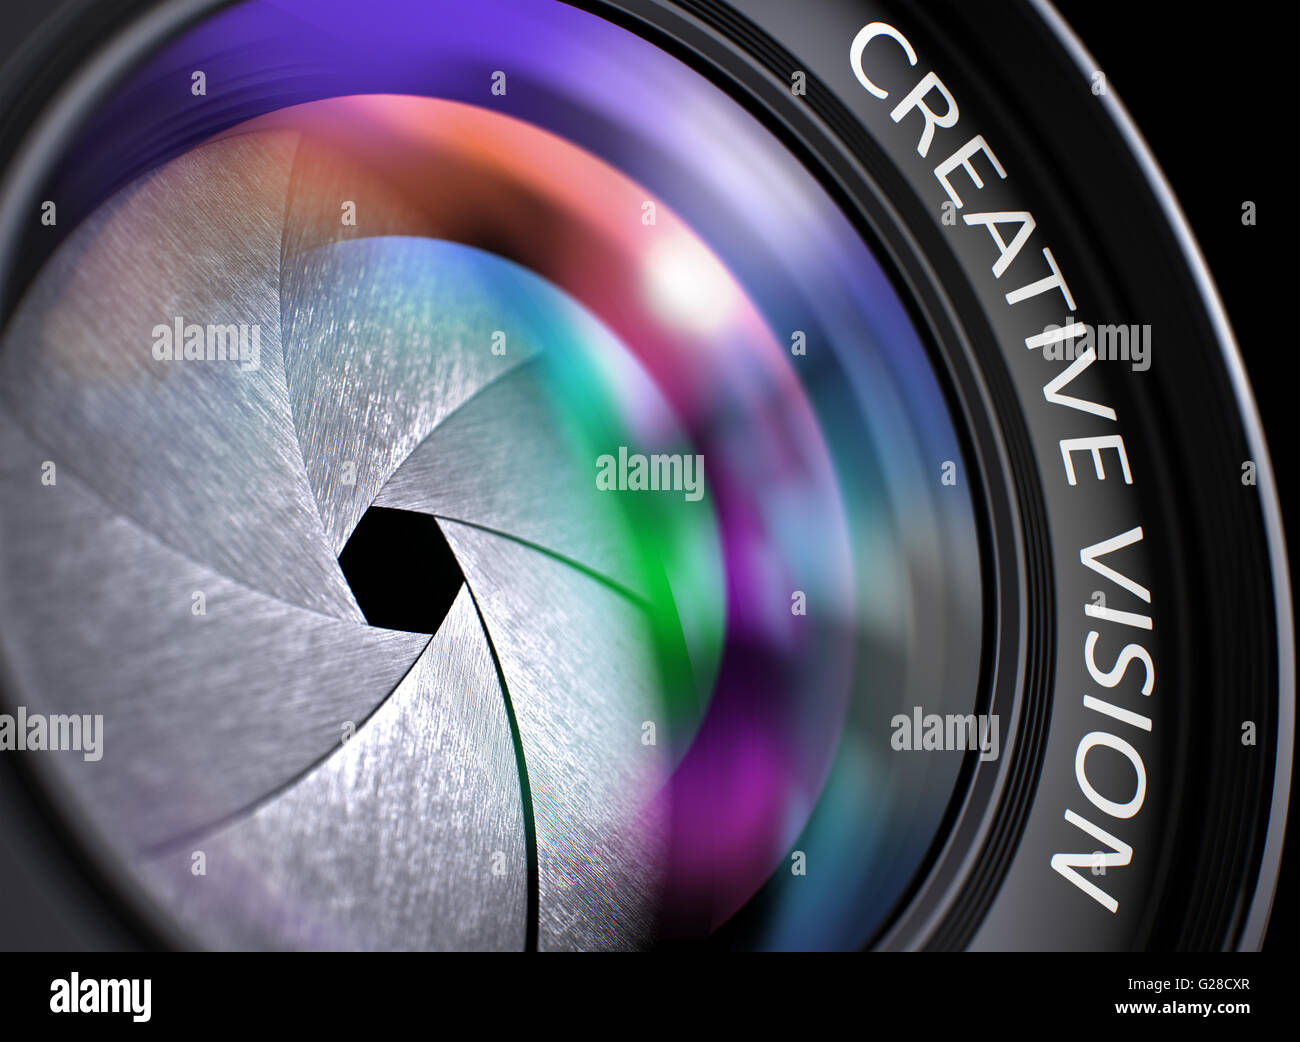 Lente di ingrandimento di una fotocamera digitale con la visione creativa. Foto Stock